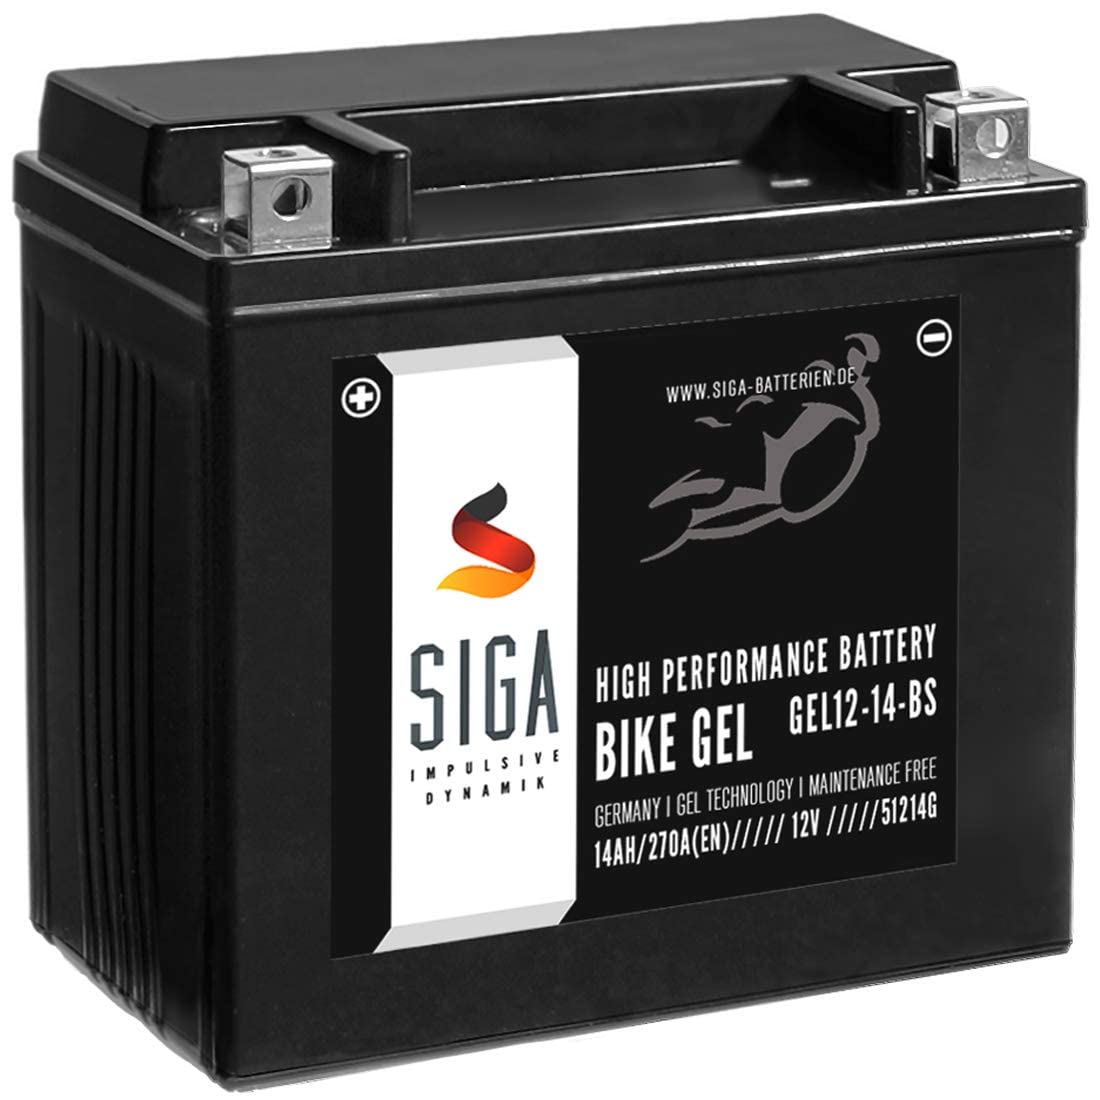 SIGA GEL Motorradbatterie 12V 14Ah 270A/EN GEL Batterie YTX14-BS GEL12-14-BS YTX14-4 von SIGA IMPULSIVE DYNAMIK